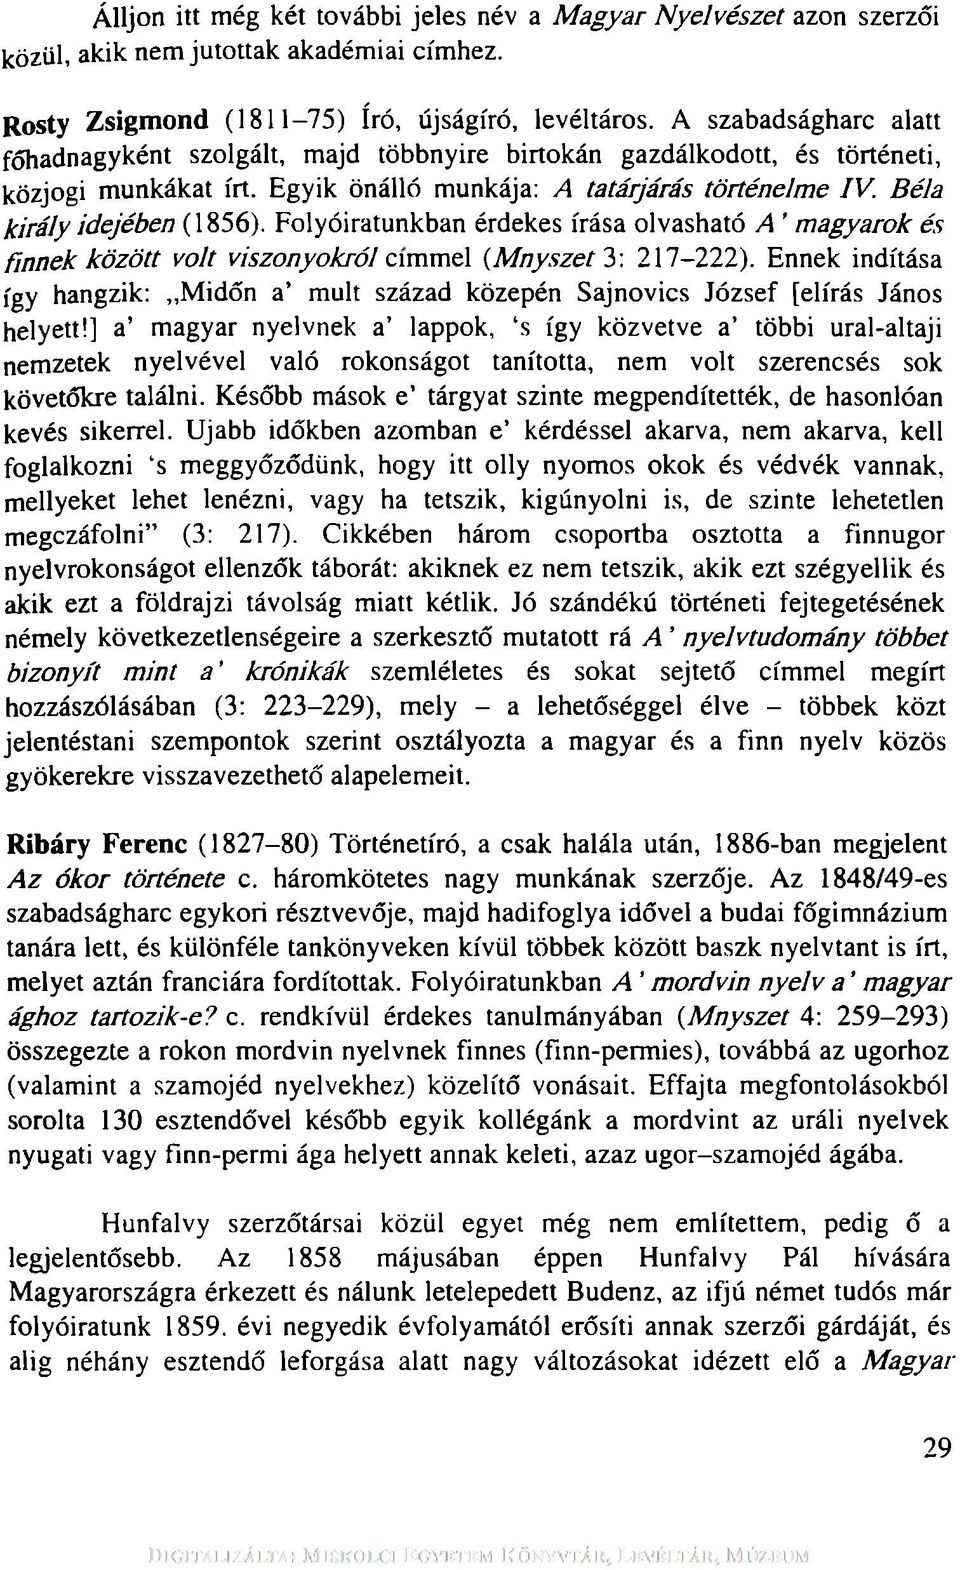 Béla k ir á ly idejében (1856). Folyóiratunkban érdekes írása olvasható A m agyarok és fin n e k kö zö tt volt viszonyokról c\mmel (M nyszet 3: 217-222).